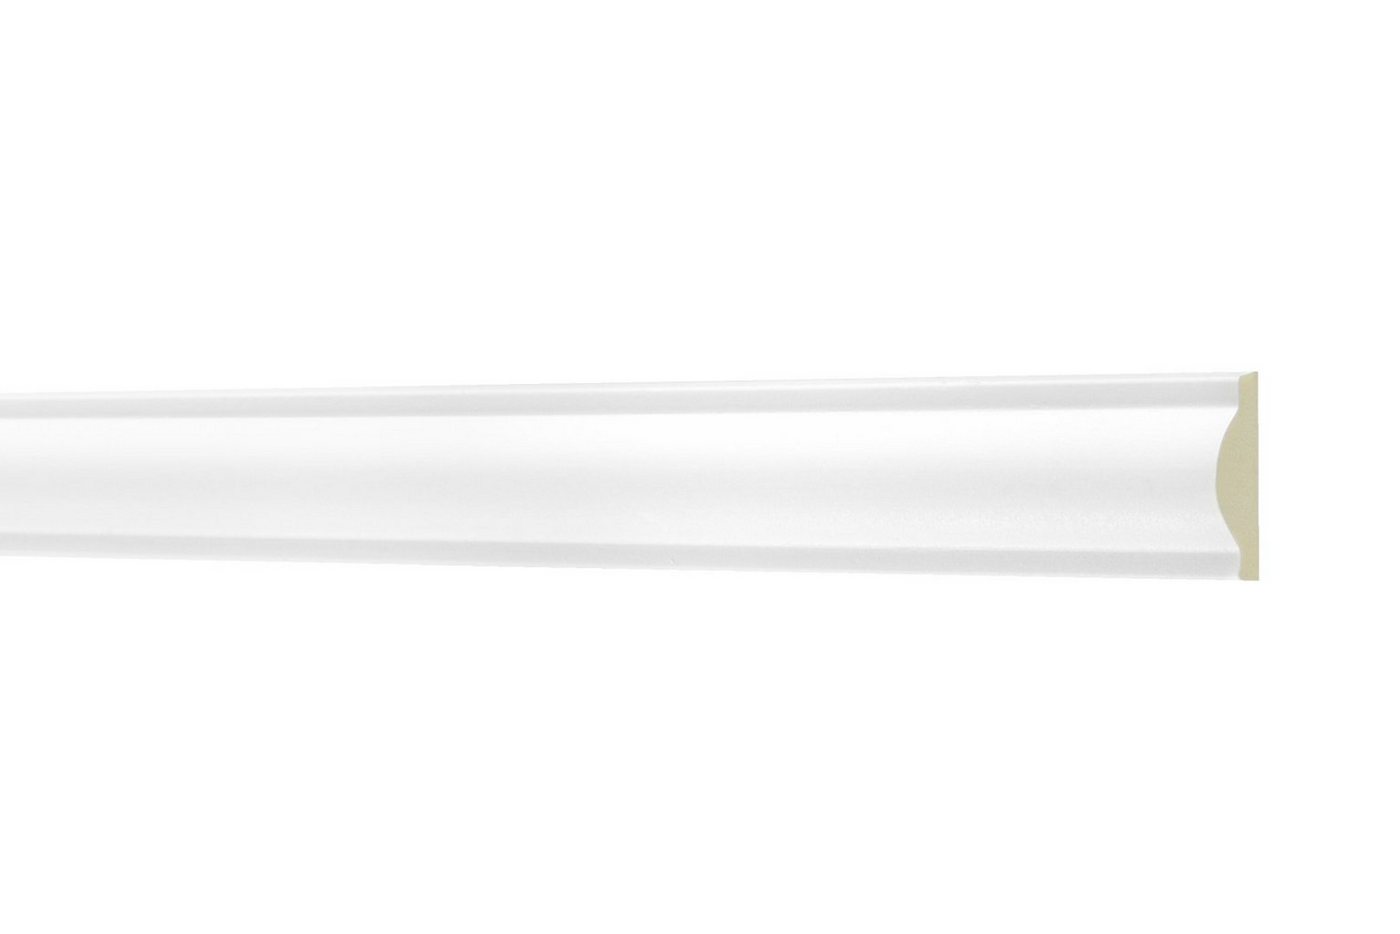 Hexim Perfect Stuckleiste AD 340, Flachleiste aus PU Serie 1 - Stuckleiste glatt, weißes Zierprofil, hart & stoßfest - Wandleiste vorgrundiert von Hexim Perfect